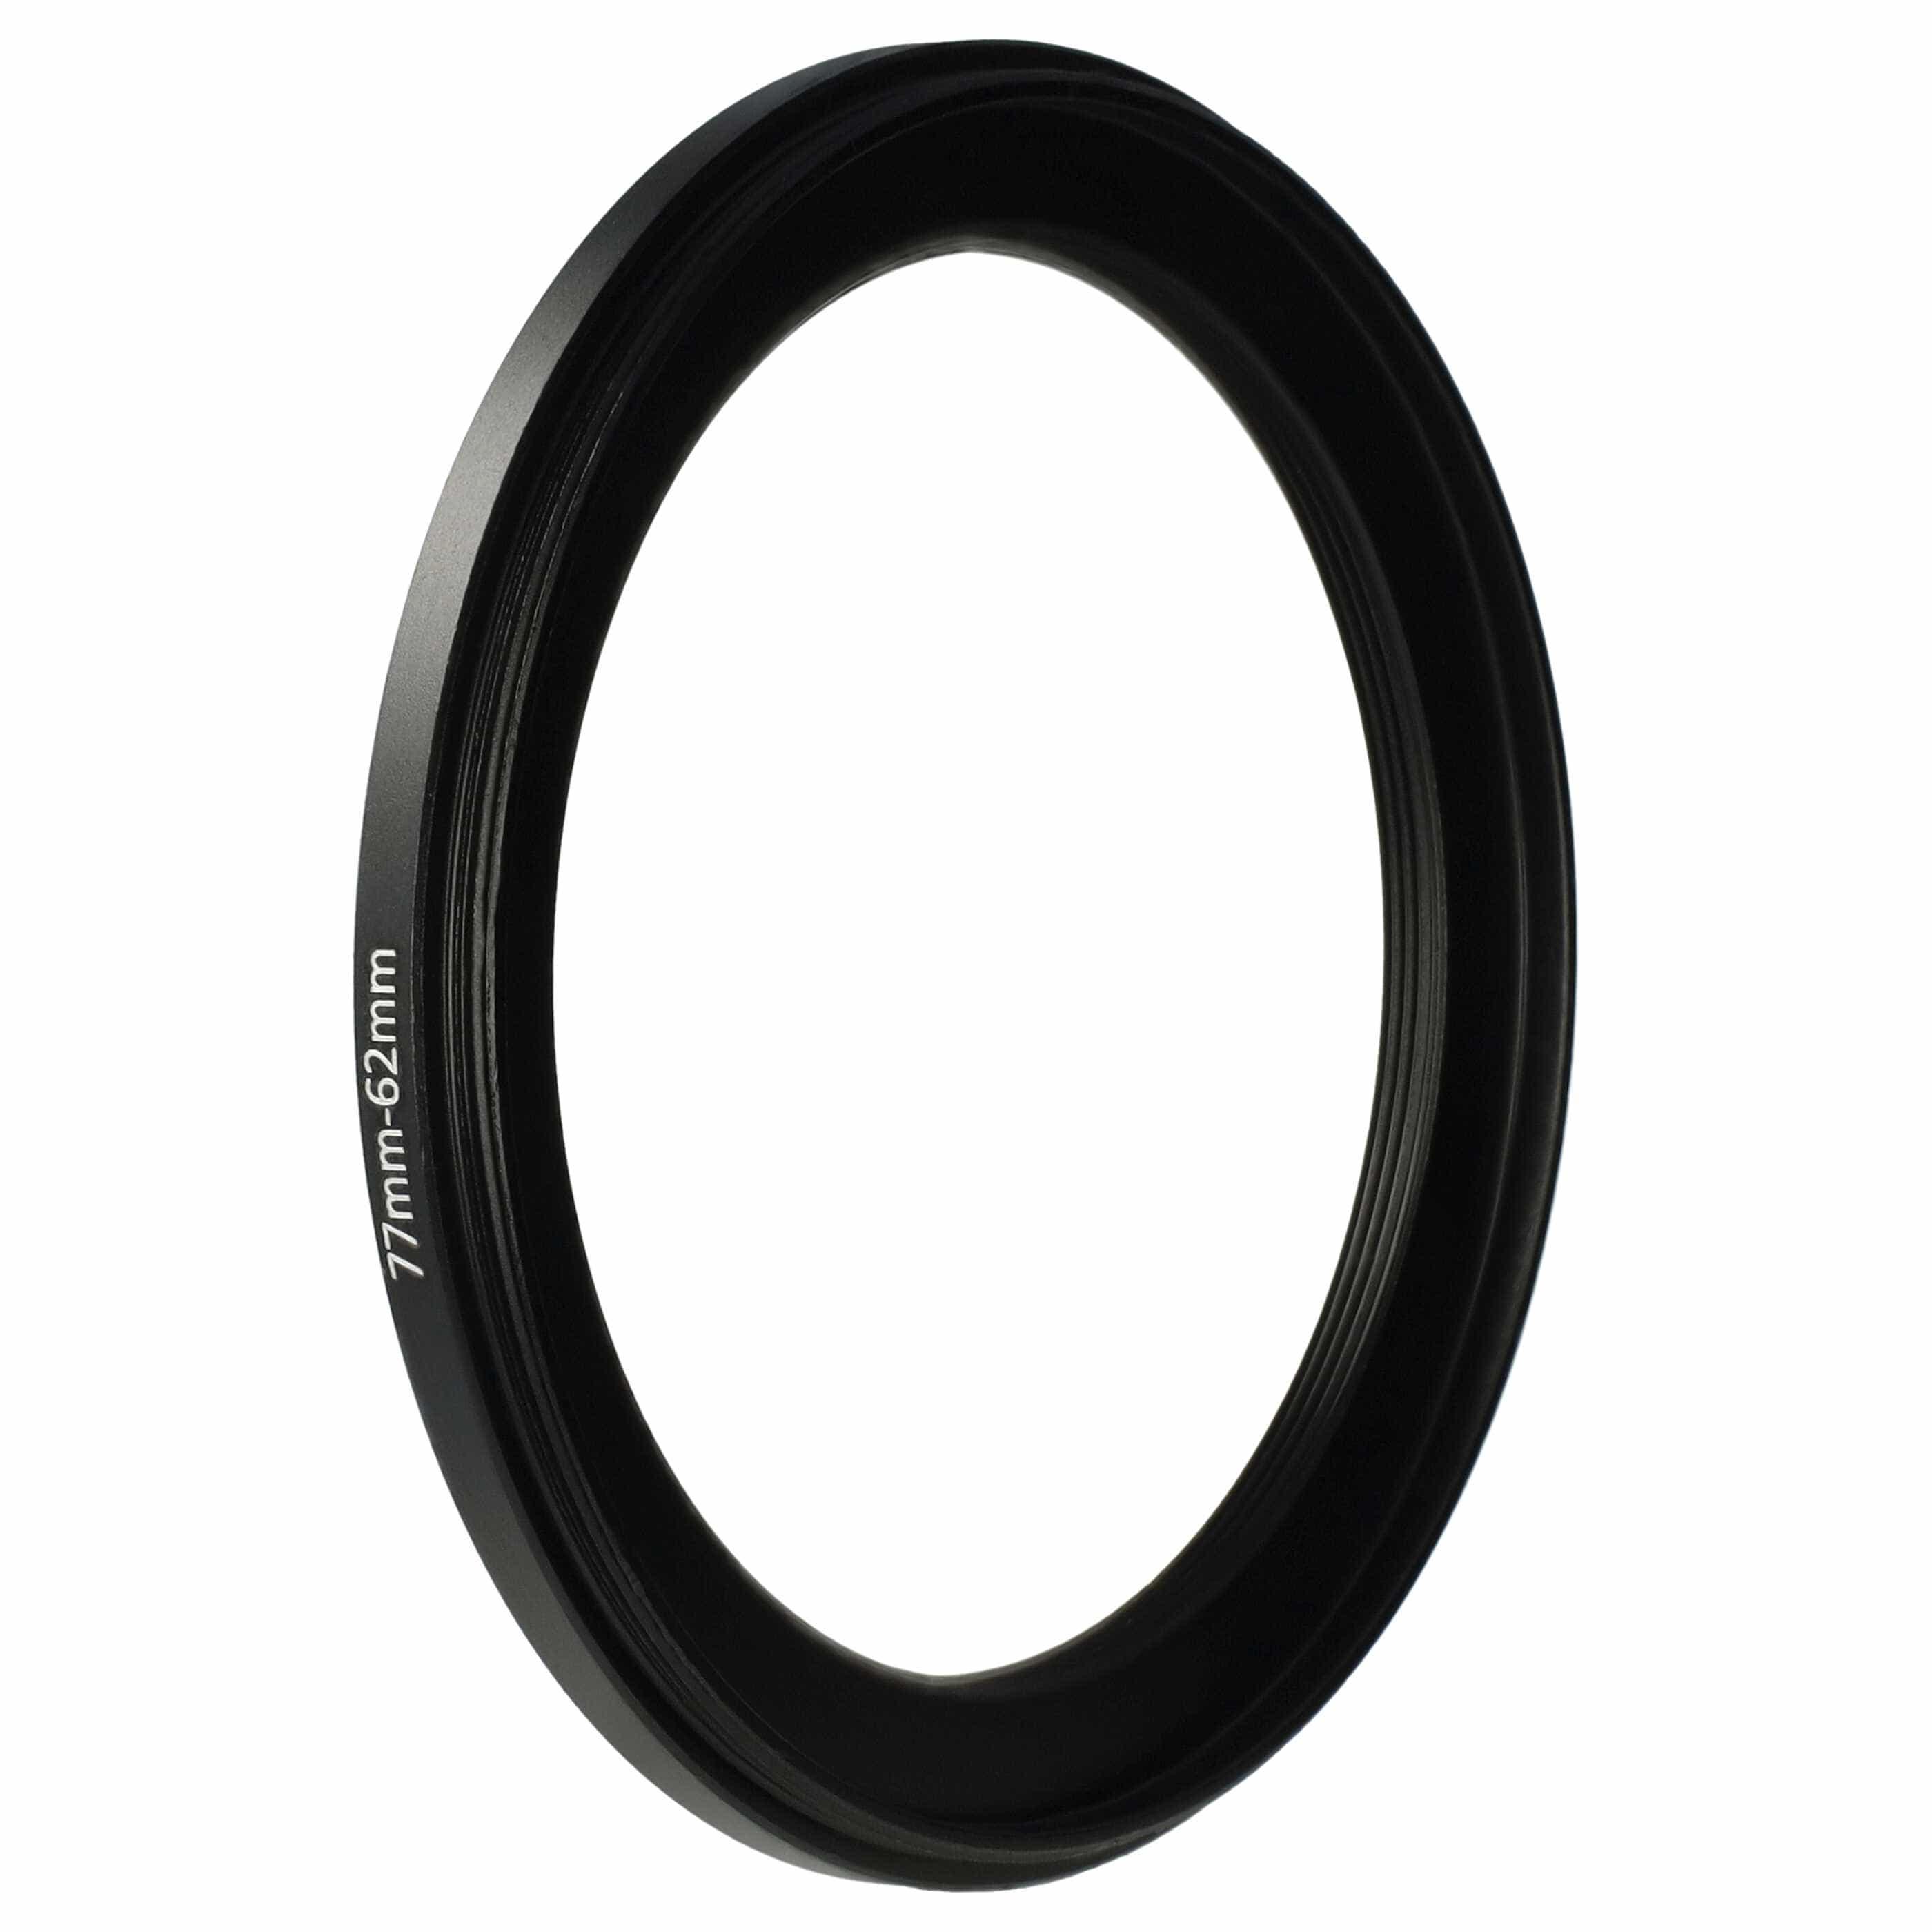 Step-Down-Ring Adapter von 77 mm auf 62 mm passend für Kamera Objektiv - Filteradapter, Metall, schwarz